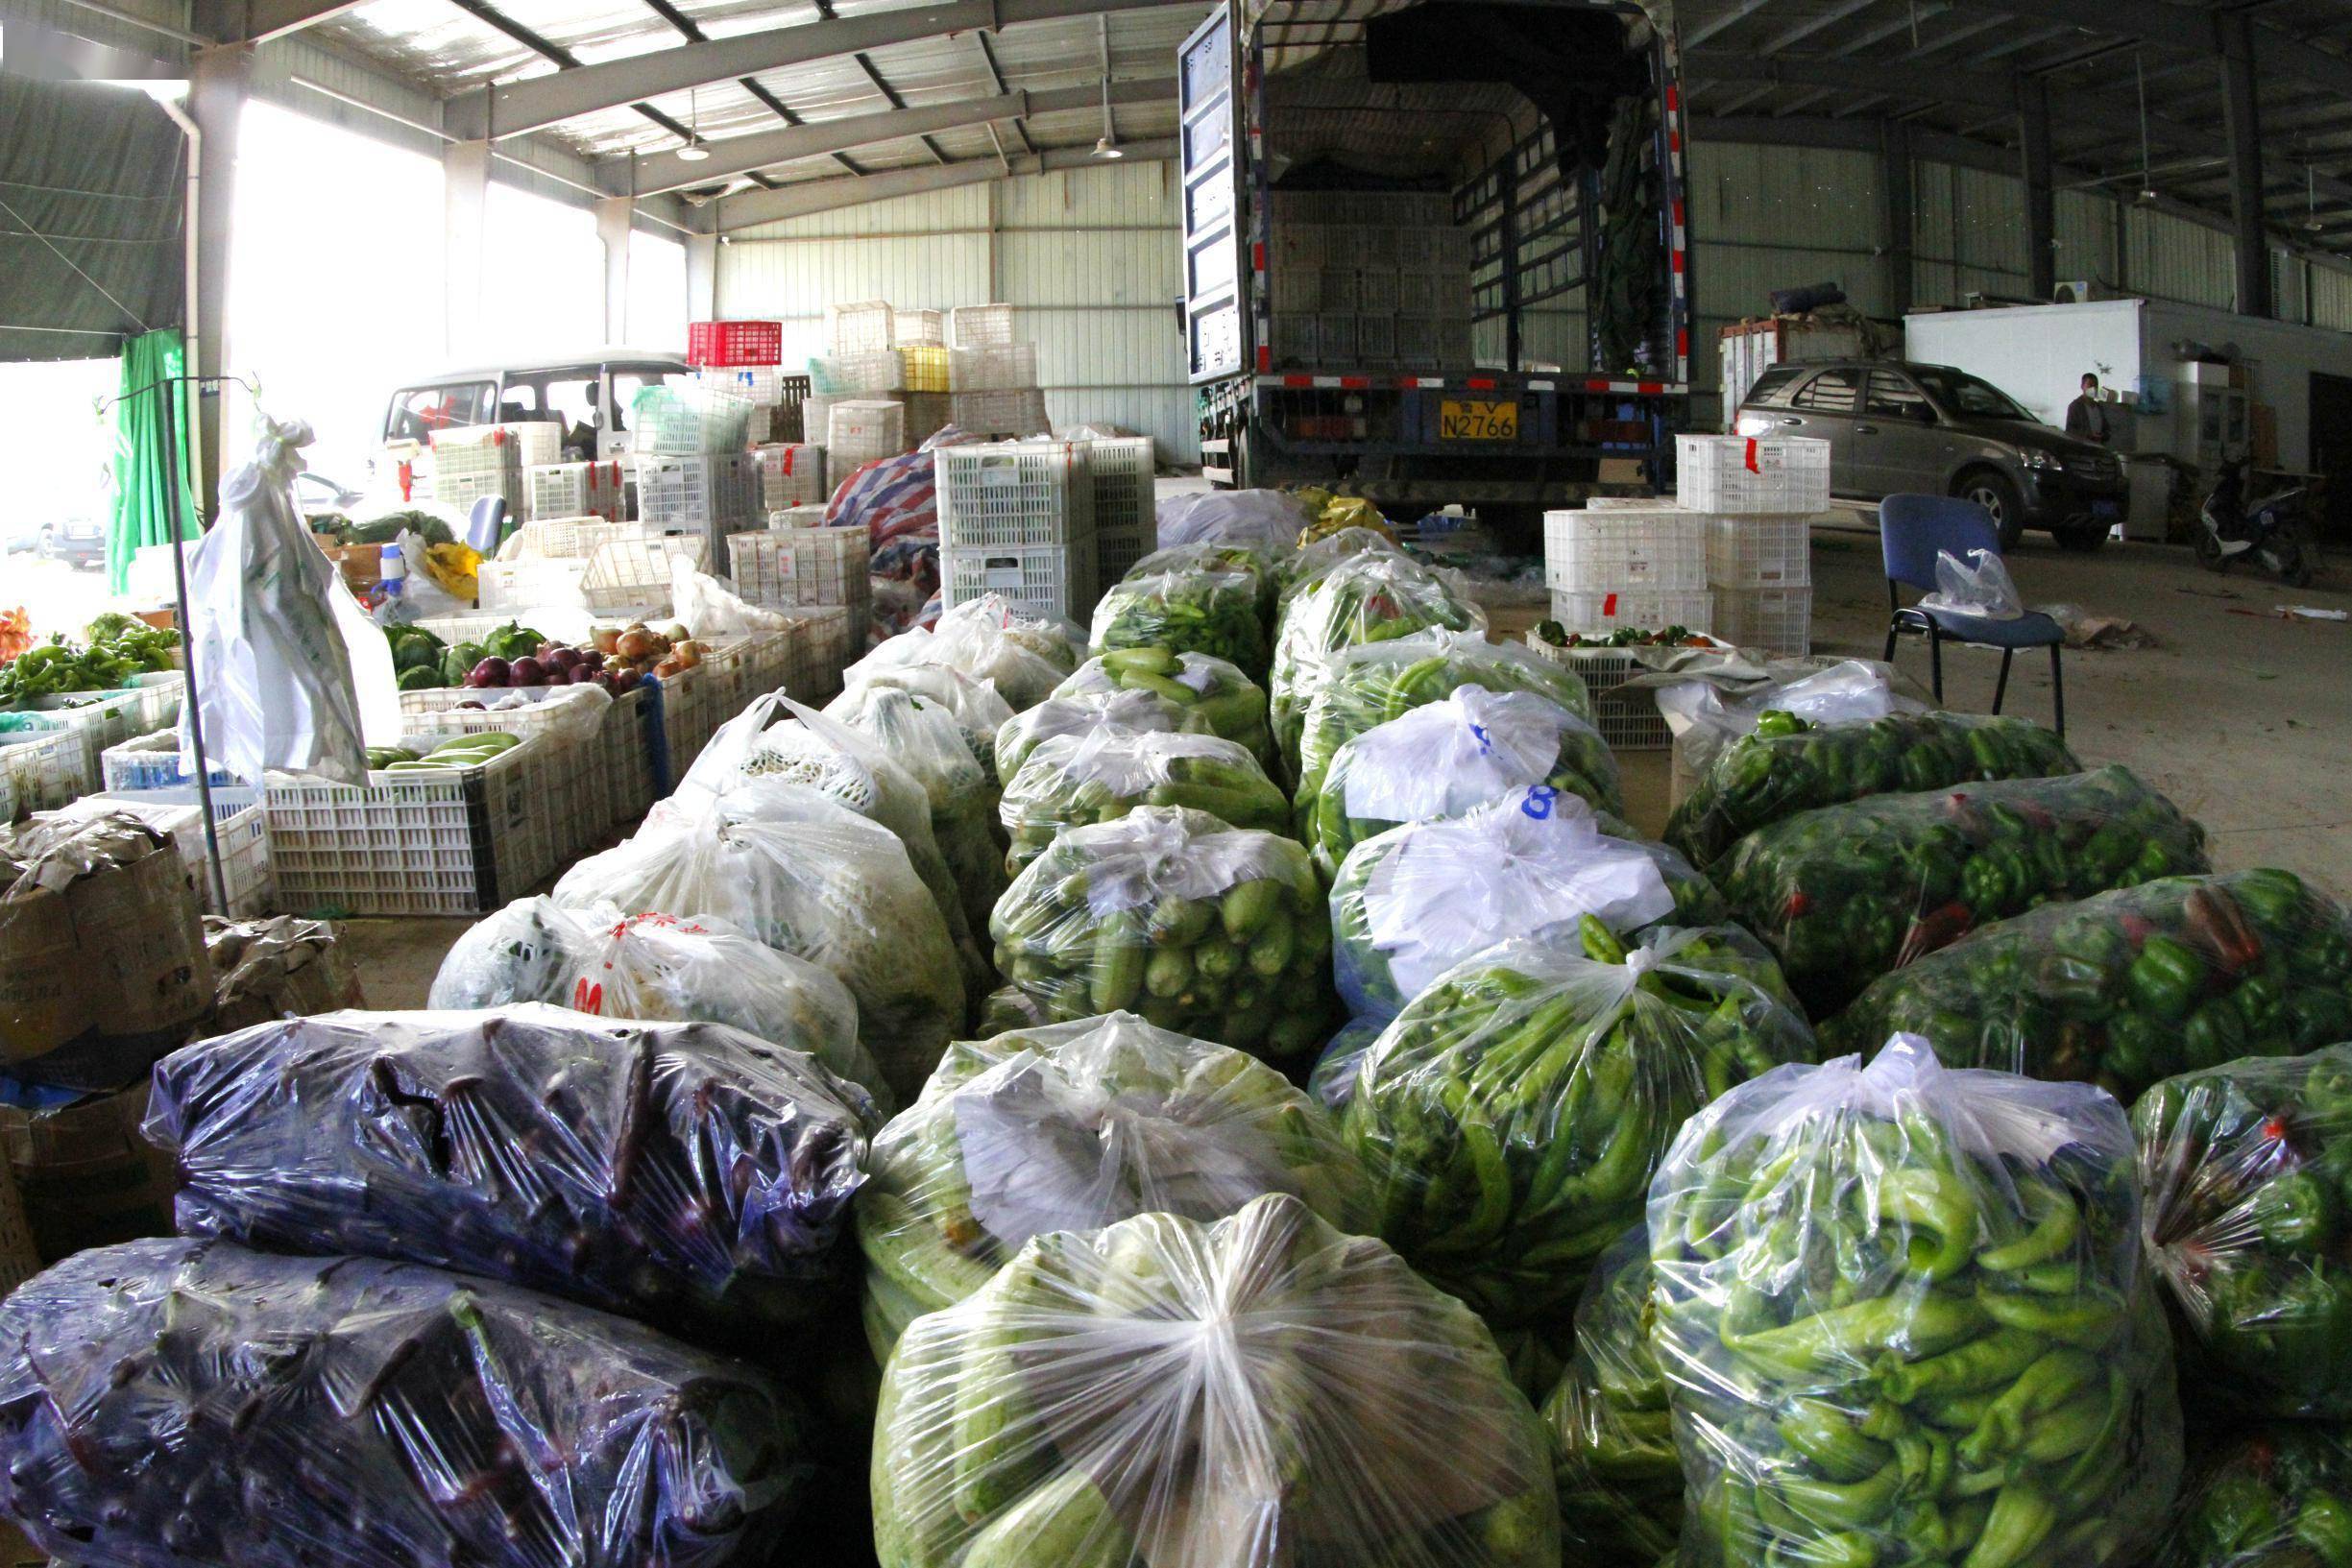 1月18日,记者走访了幸福蔬菜批发市场,作为烟台市区最大的蔬菜批发